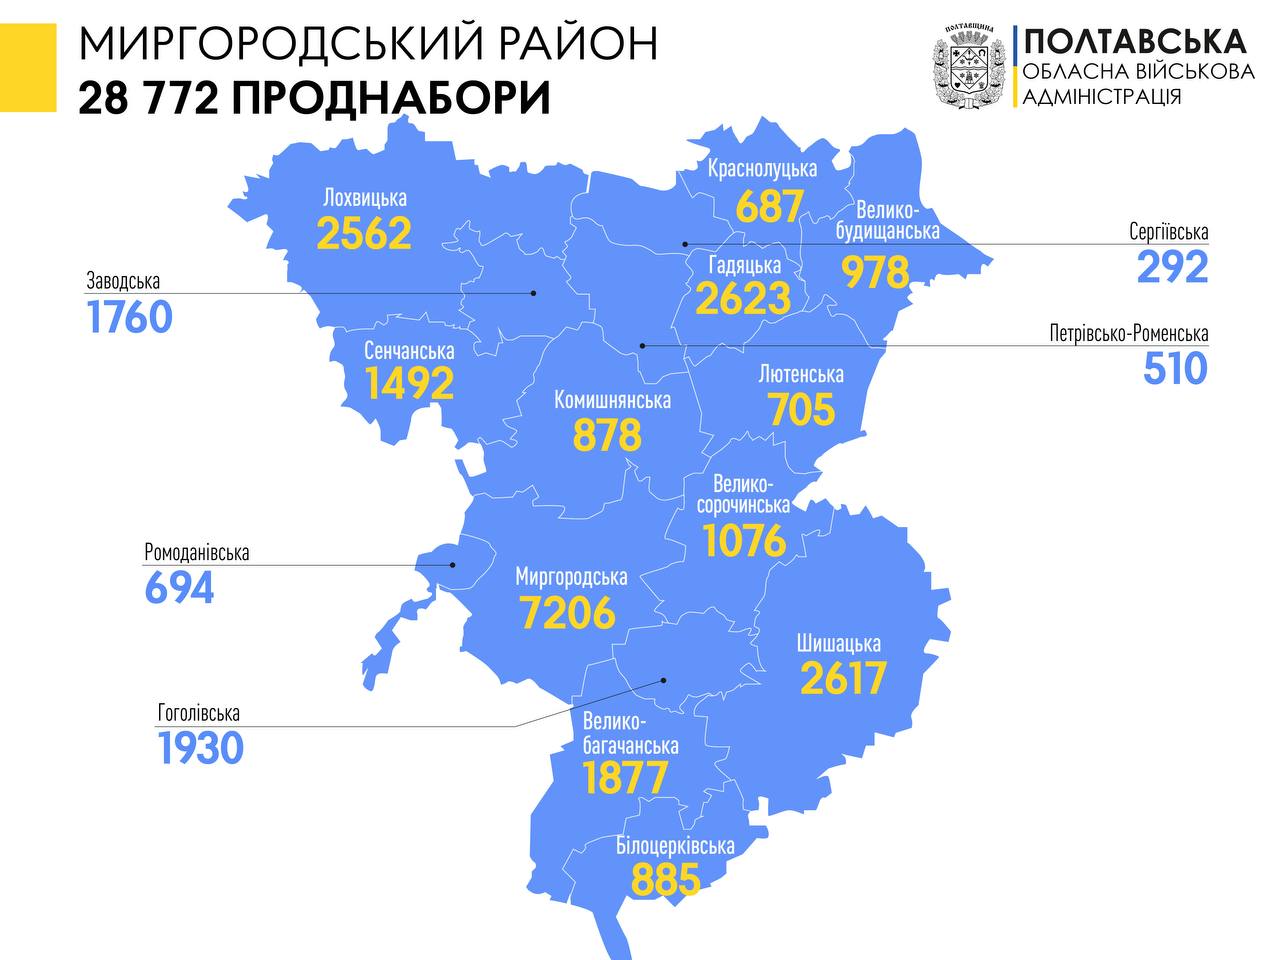 Понад 28 тисяч продуктових наборів вже отримали переселенці в Миргородському районі 